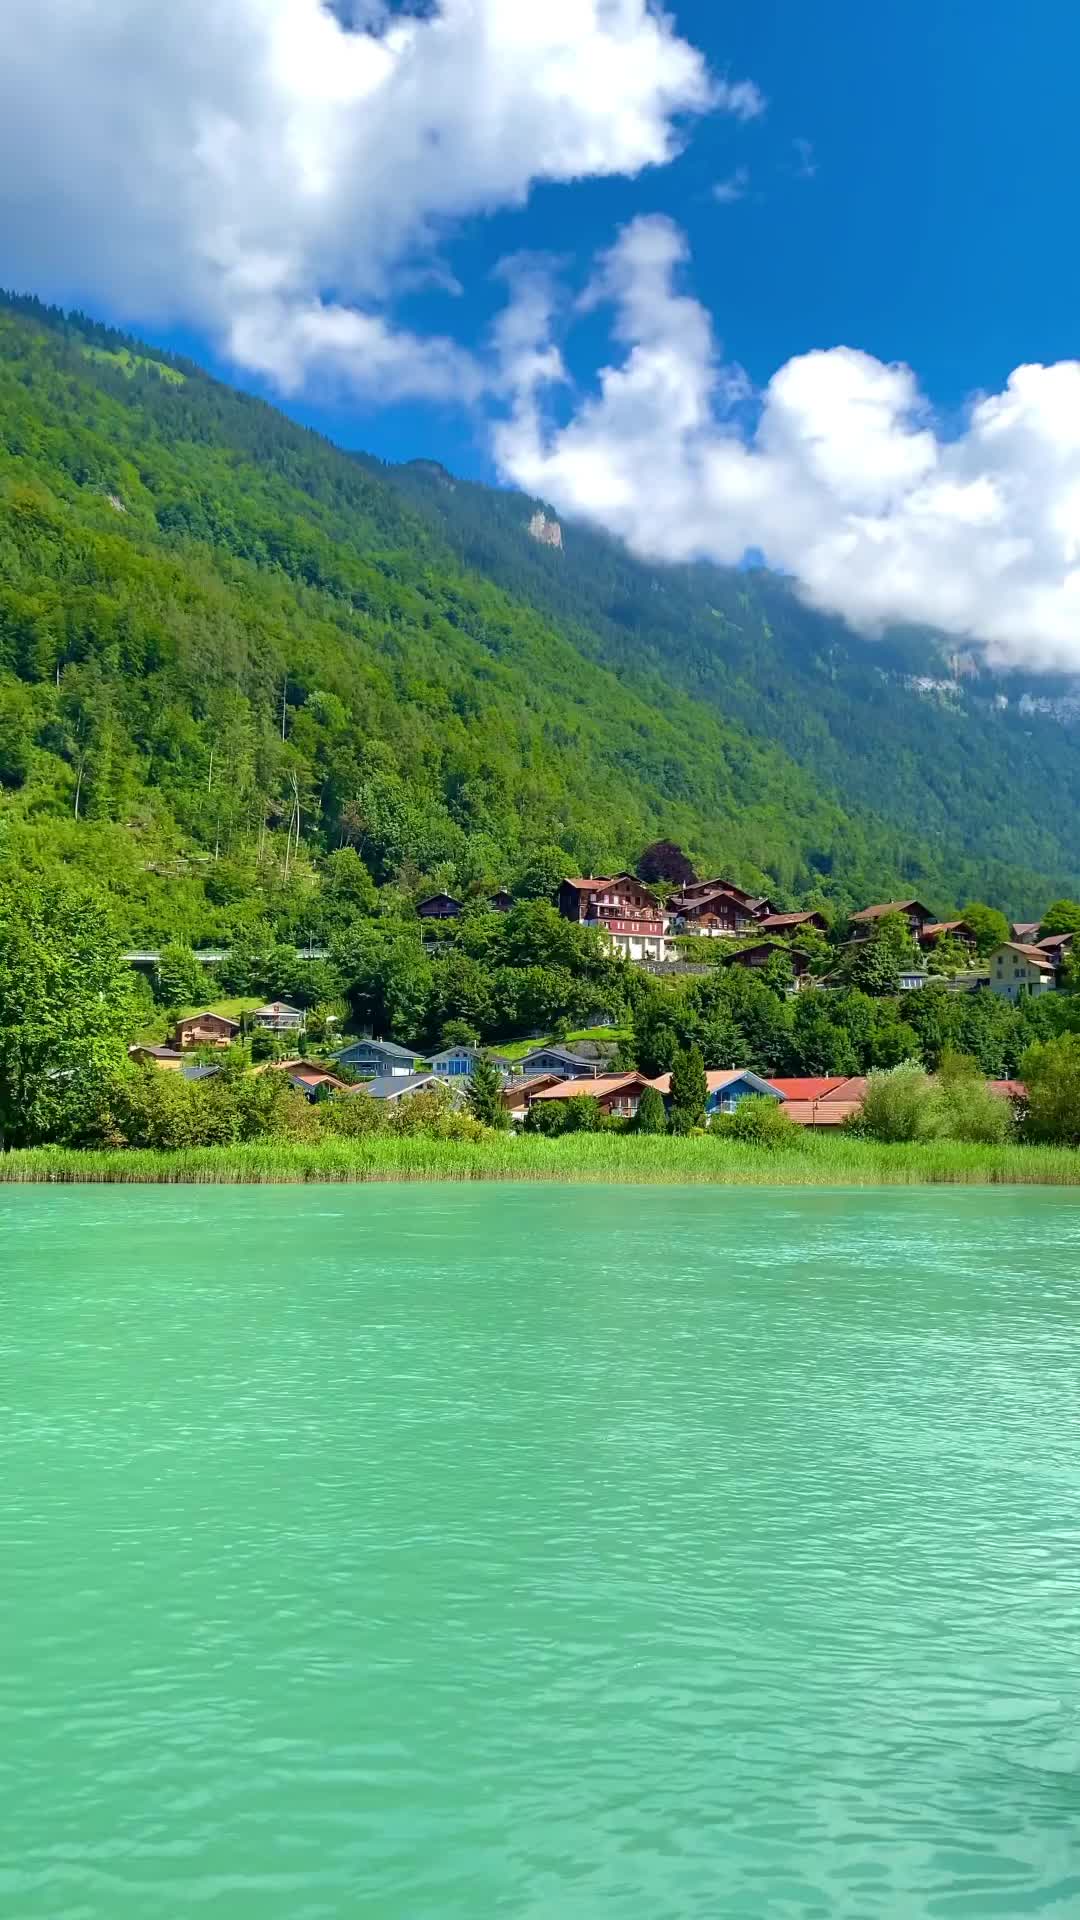 Aare River in Interlaken: Explore Switzerland's Beauty